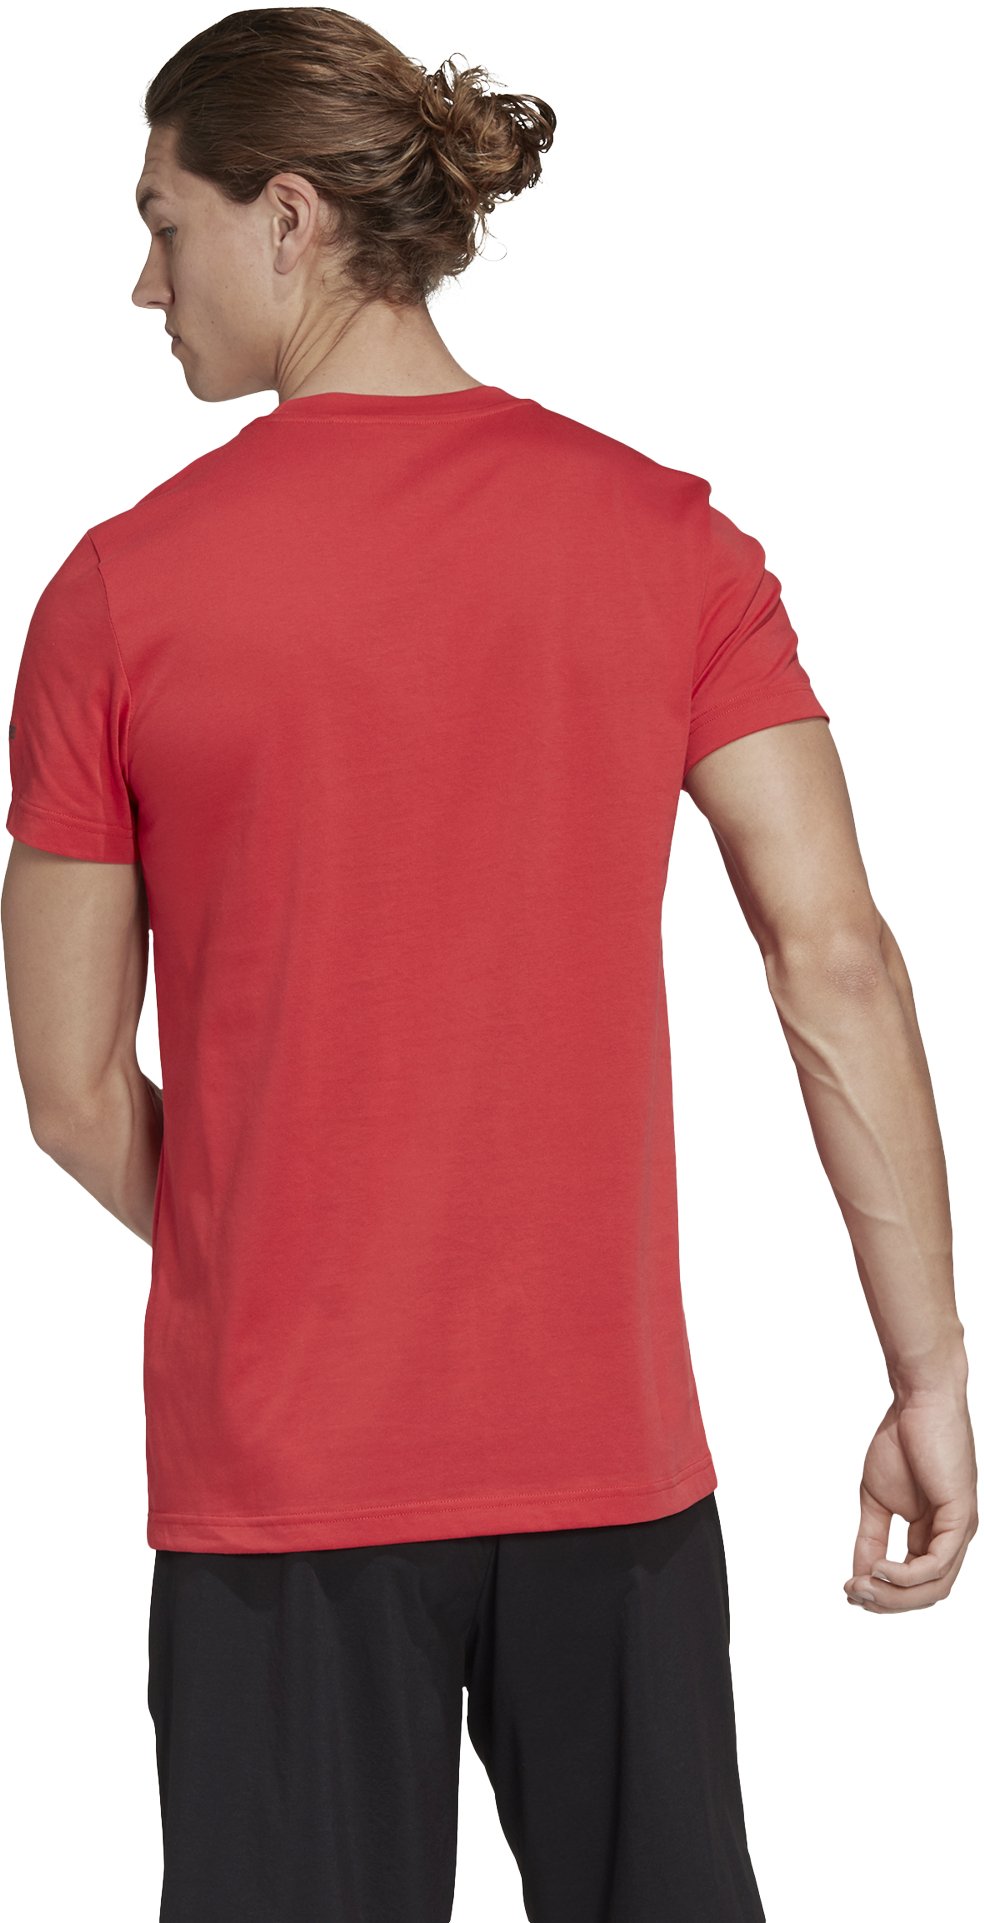 Men's outdoor T-shirt